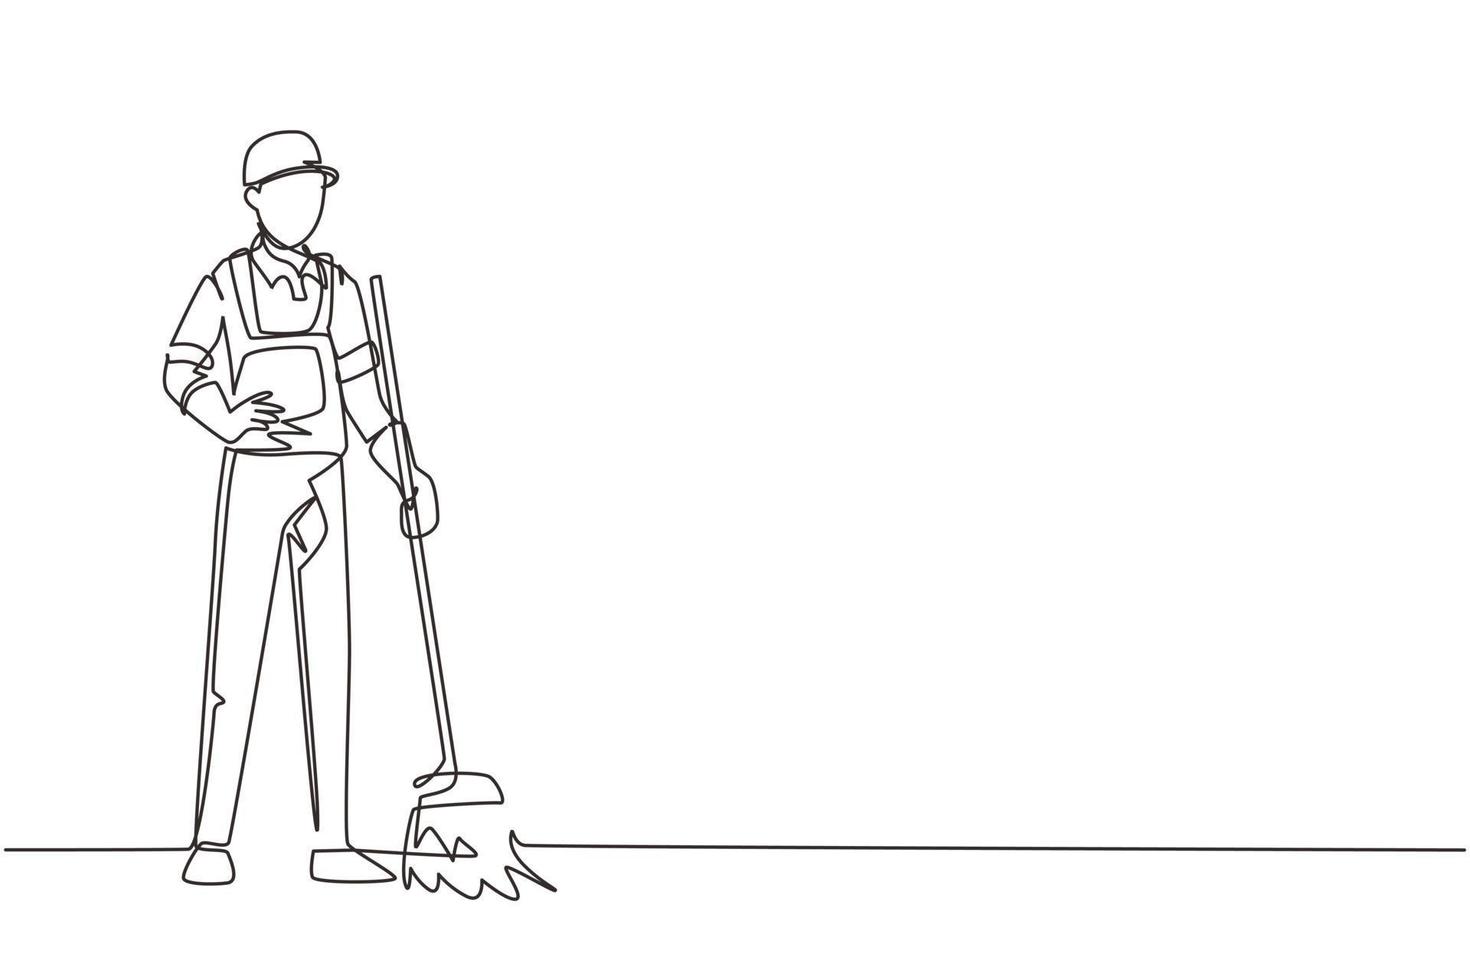 disegno continuo di una linea sorridente giovane bidello maschio in piedi in uniforme, spazzando il pavimento con una scopa, pulizia professionale, servizio di casa e ufficio. illustrazione vettoriale di disegno a linea singola